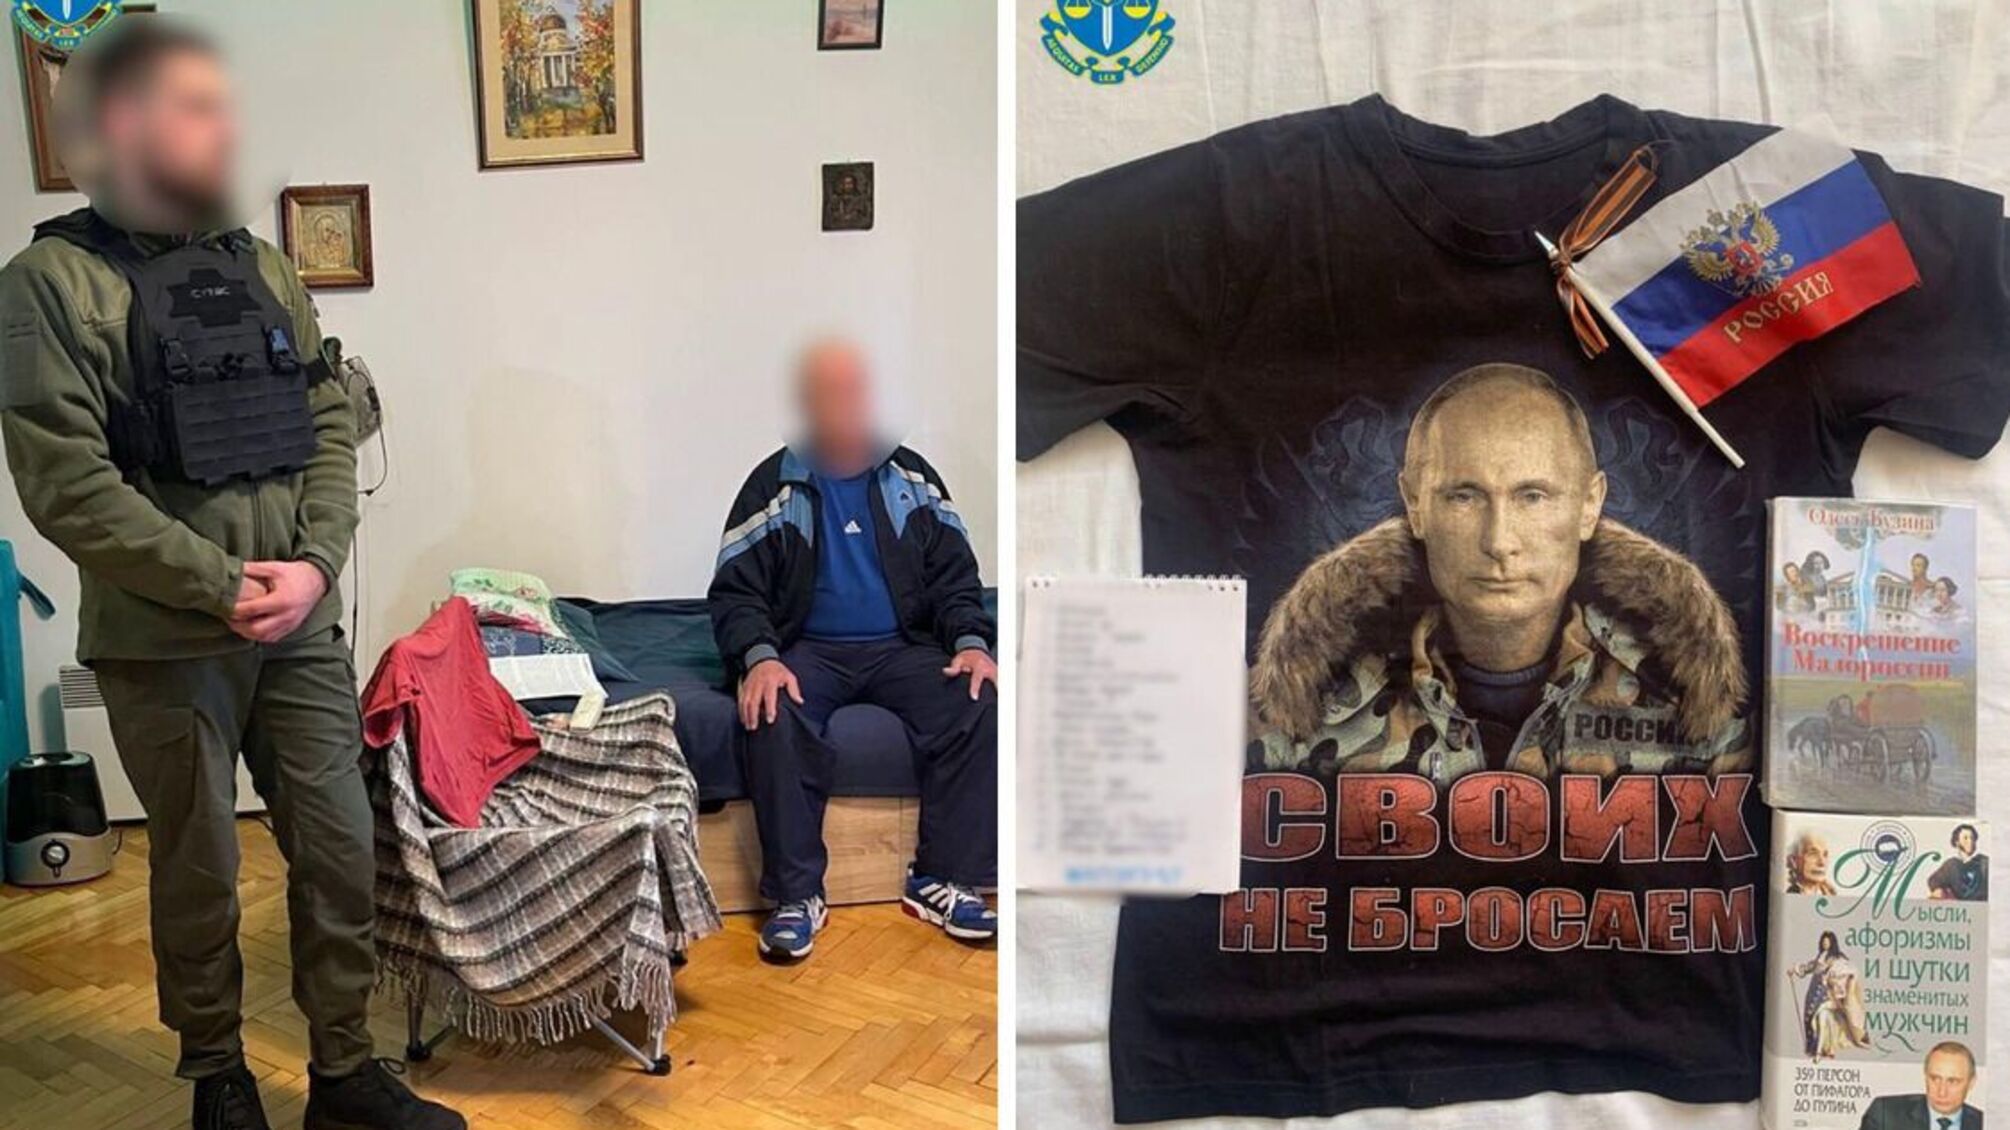 Символика агрессора и одежда с лозунгами в поддержку россии: в Черкасской области задержали сторонников 'русского мира'